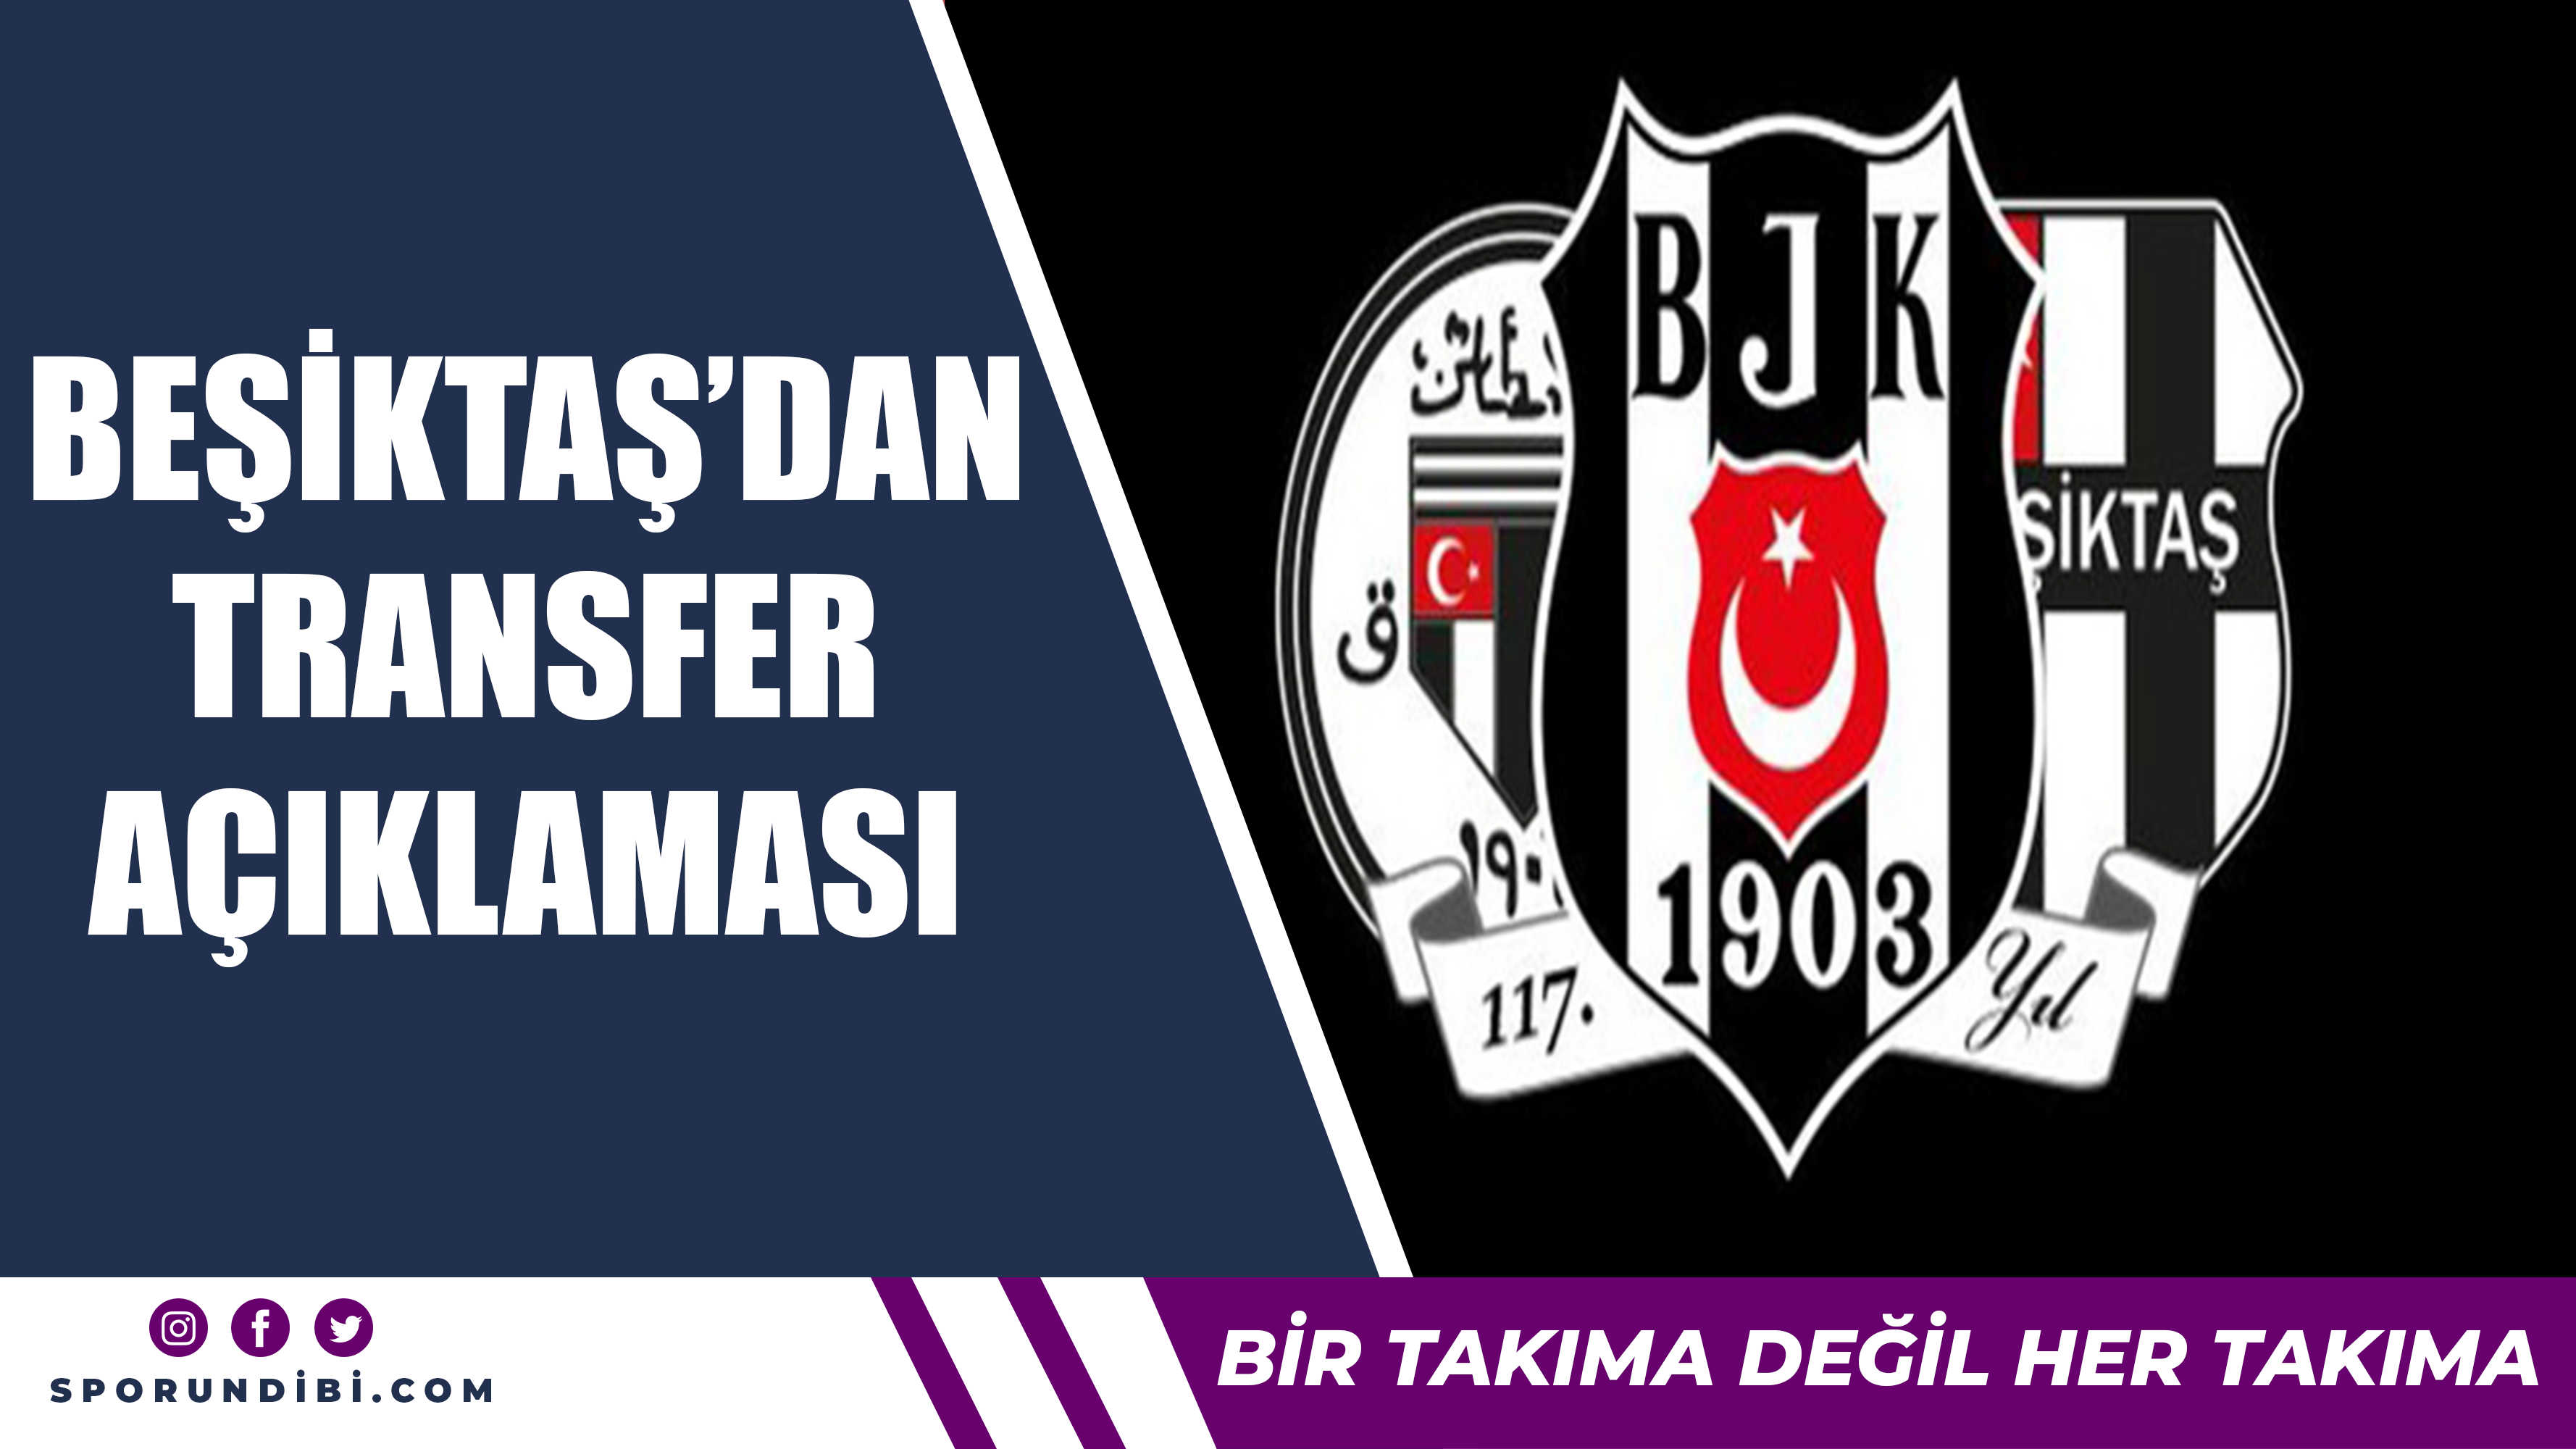 Beşiktaş'tan transfer açıklaması...